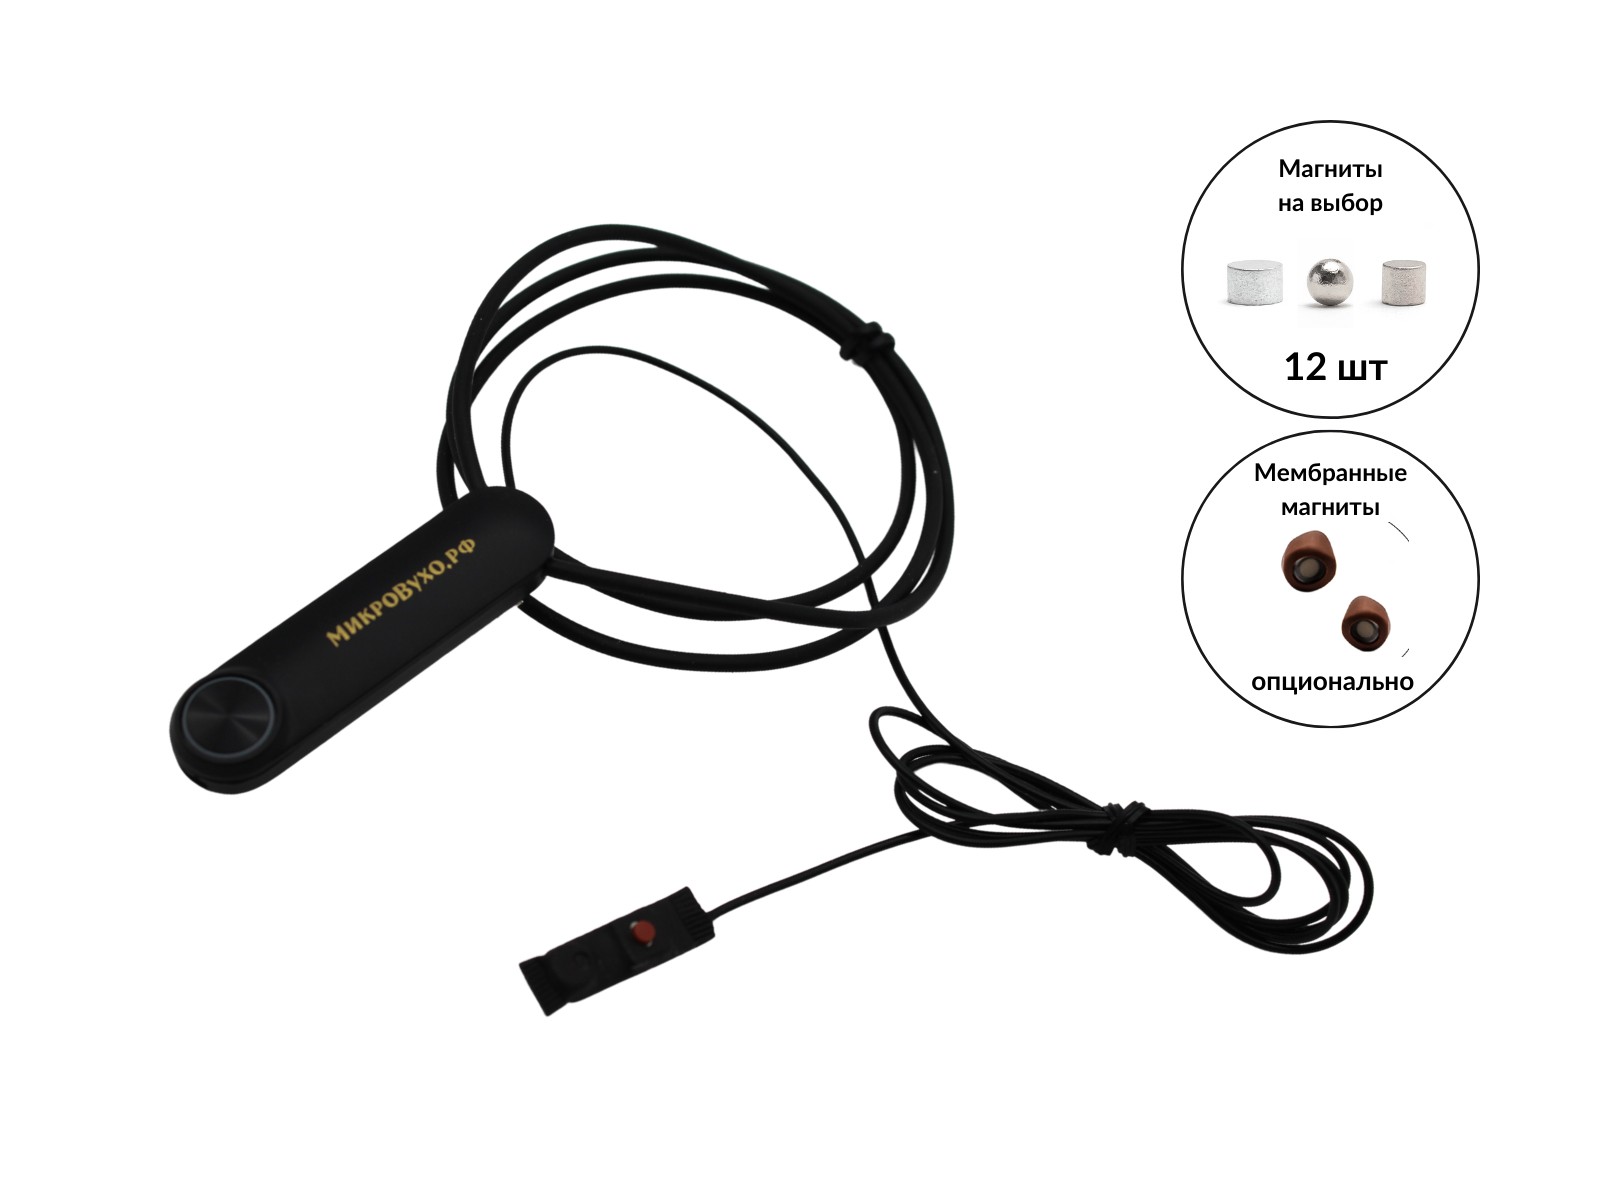 Гарнитура Bluetooth Standard с магнитными микронаушниками 2 мм - изображение 5